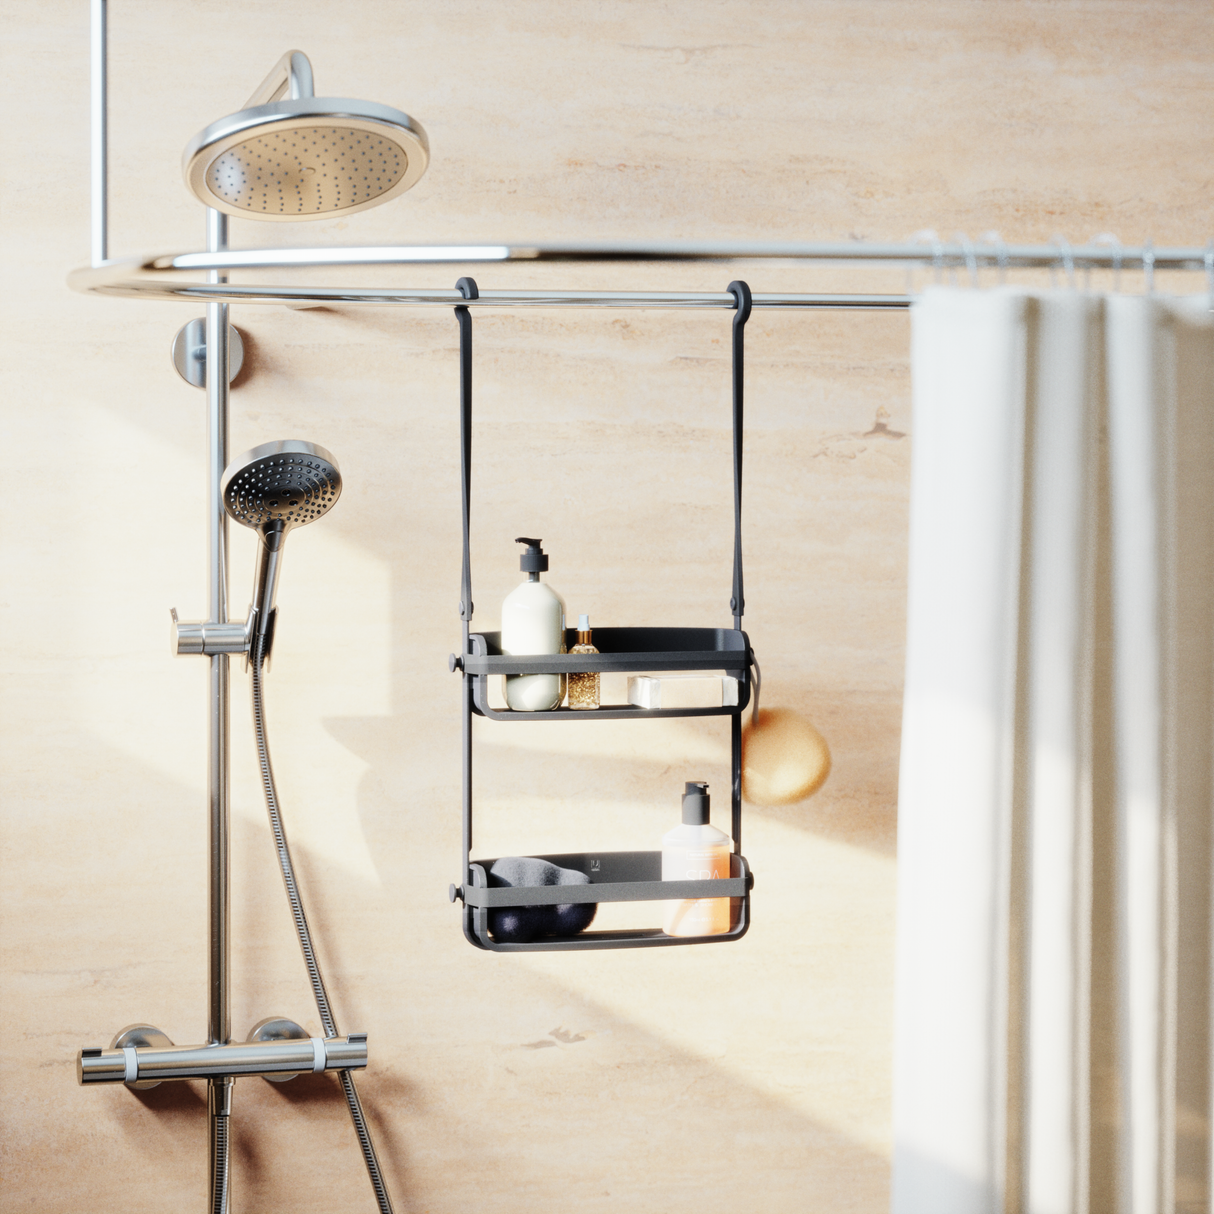 Flex Shower Caddy - Hanging Shower Organizer by Umbra